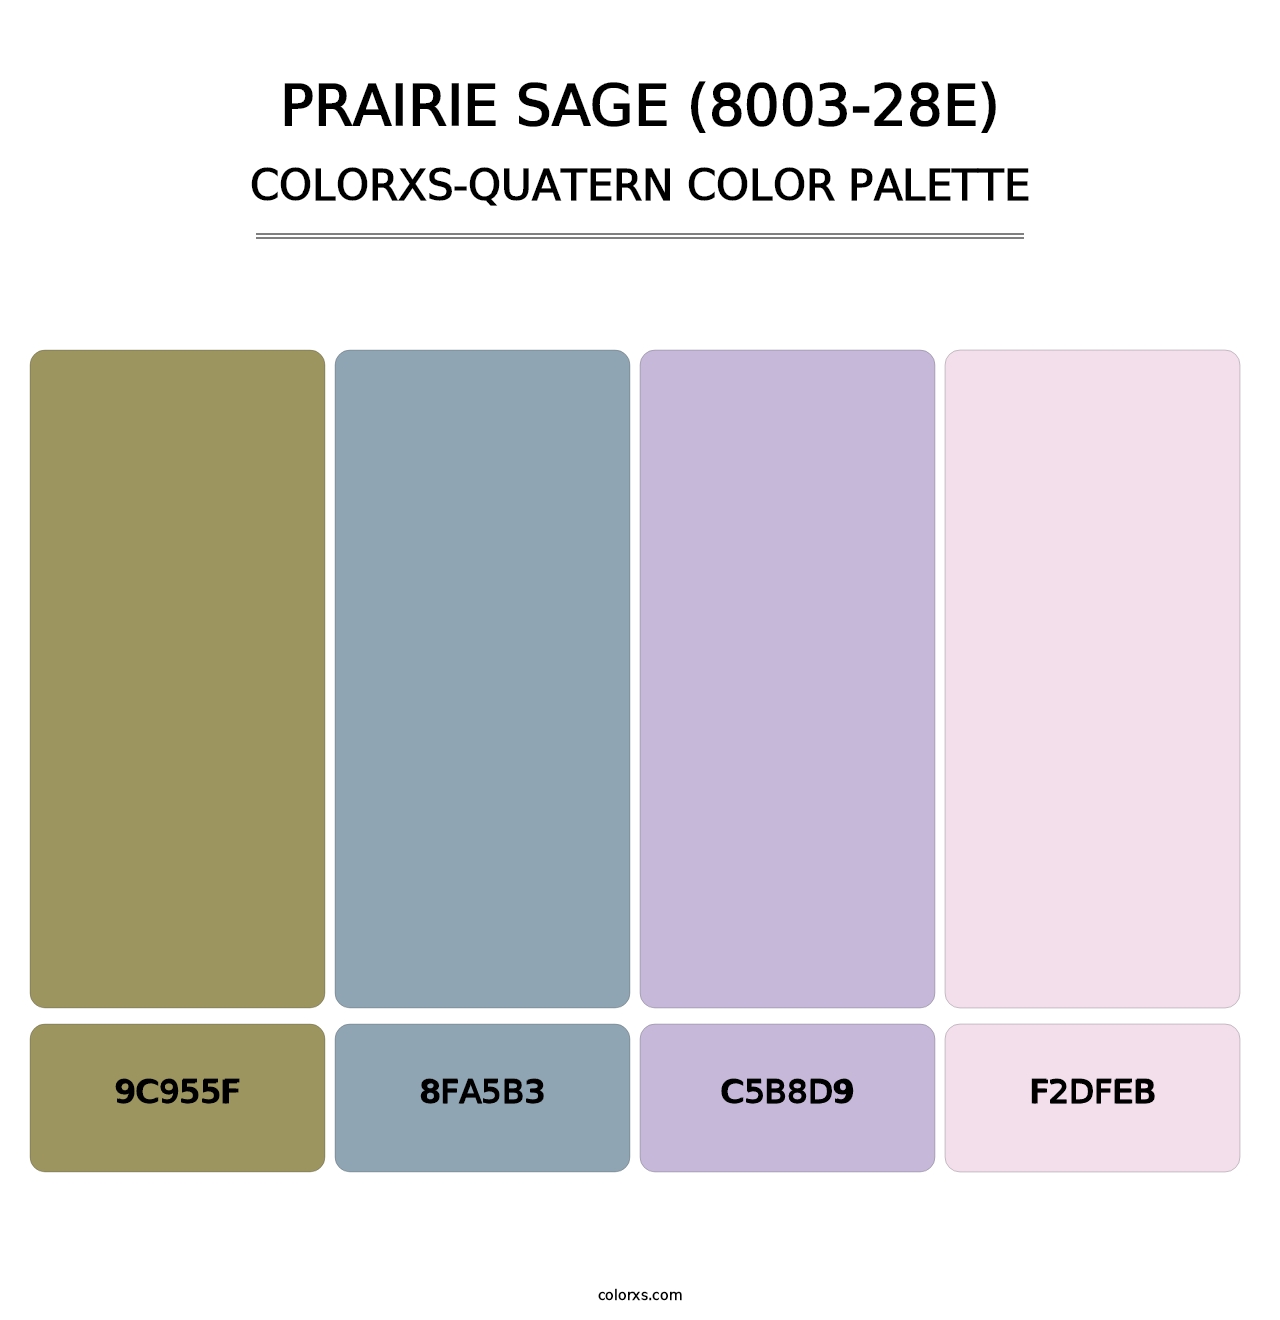 Prairie Sage (8003-28E) - Colorxs Quatern Palette